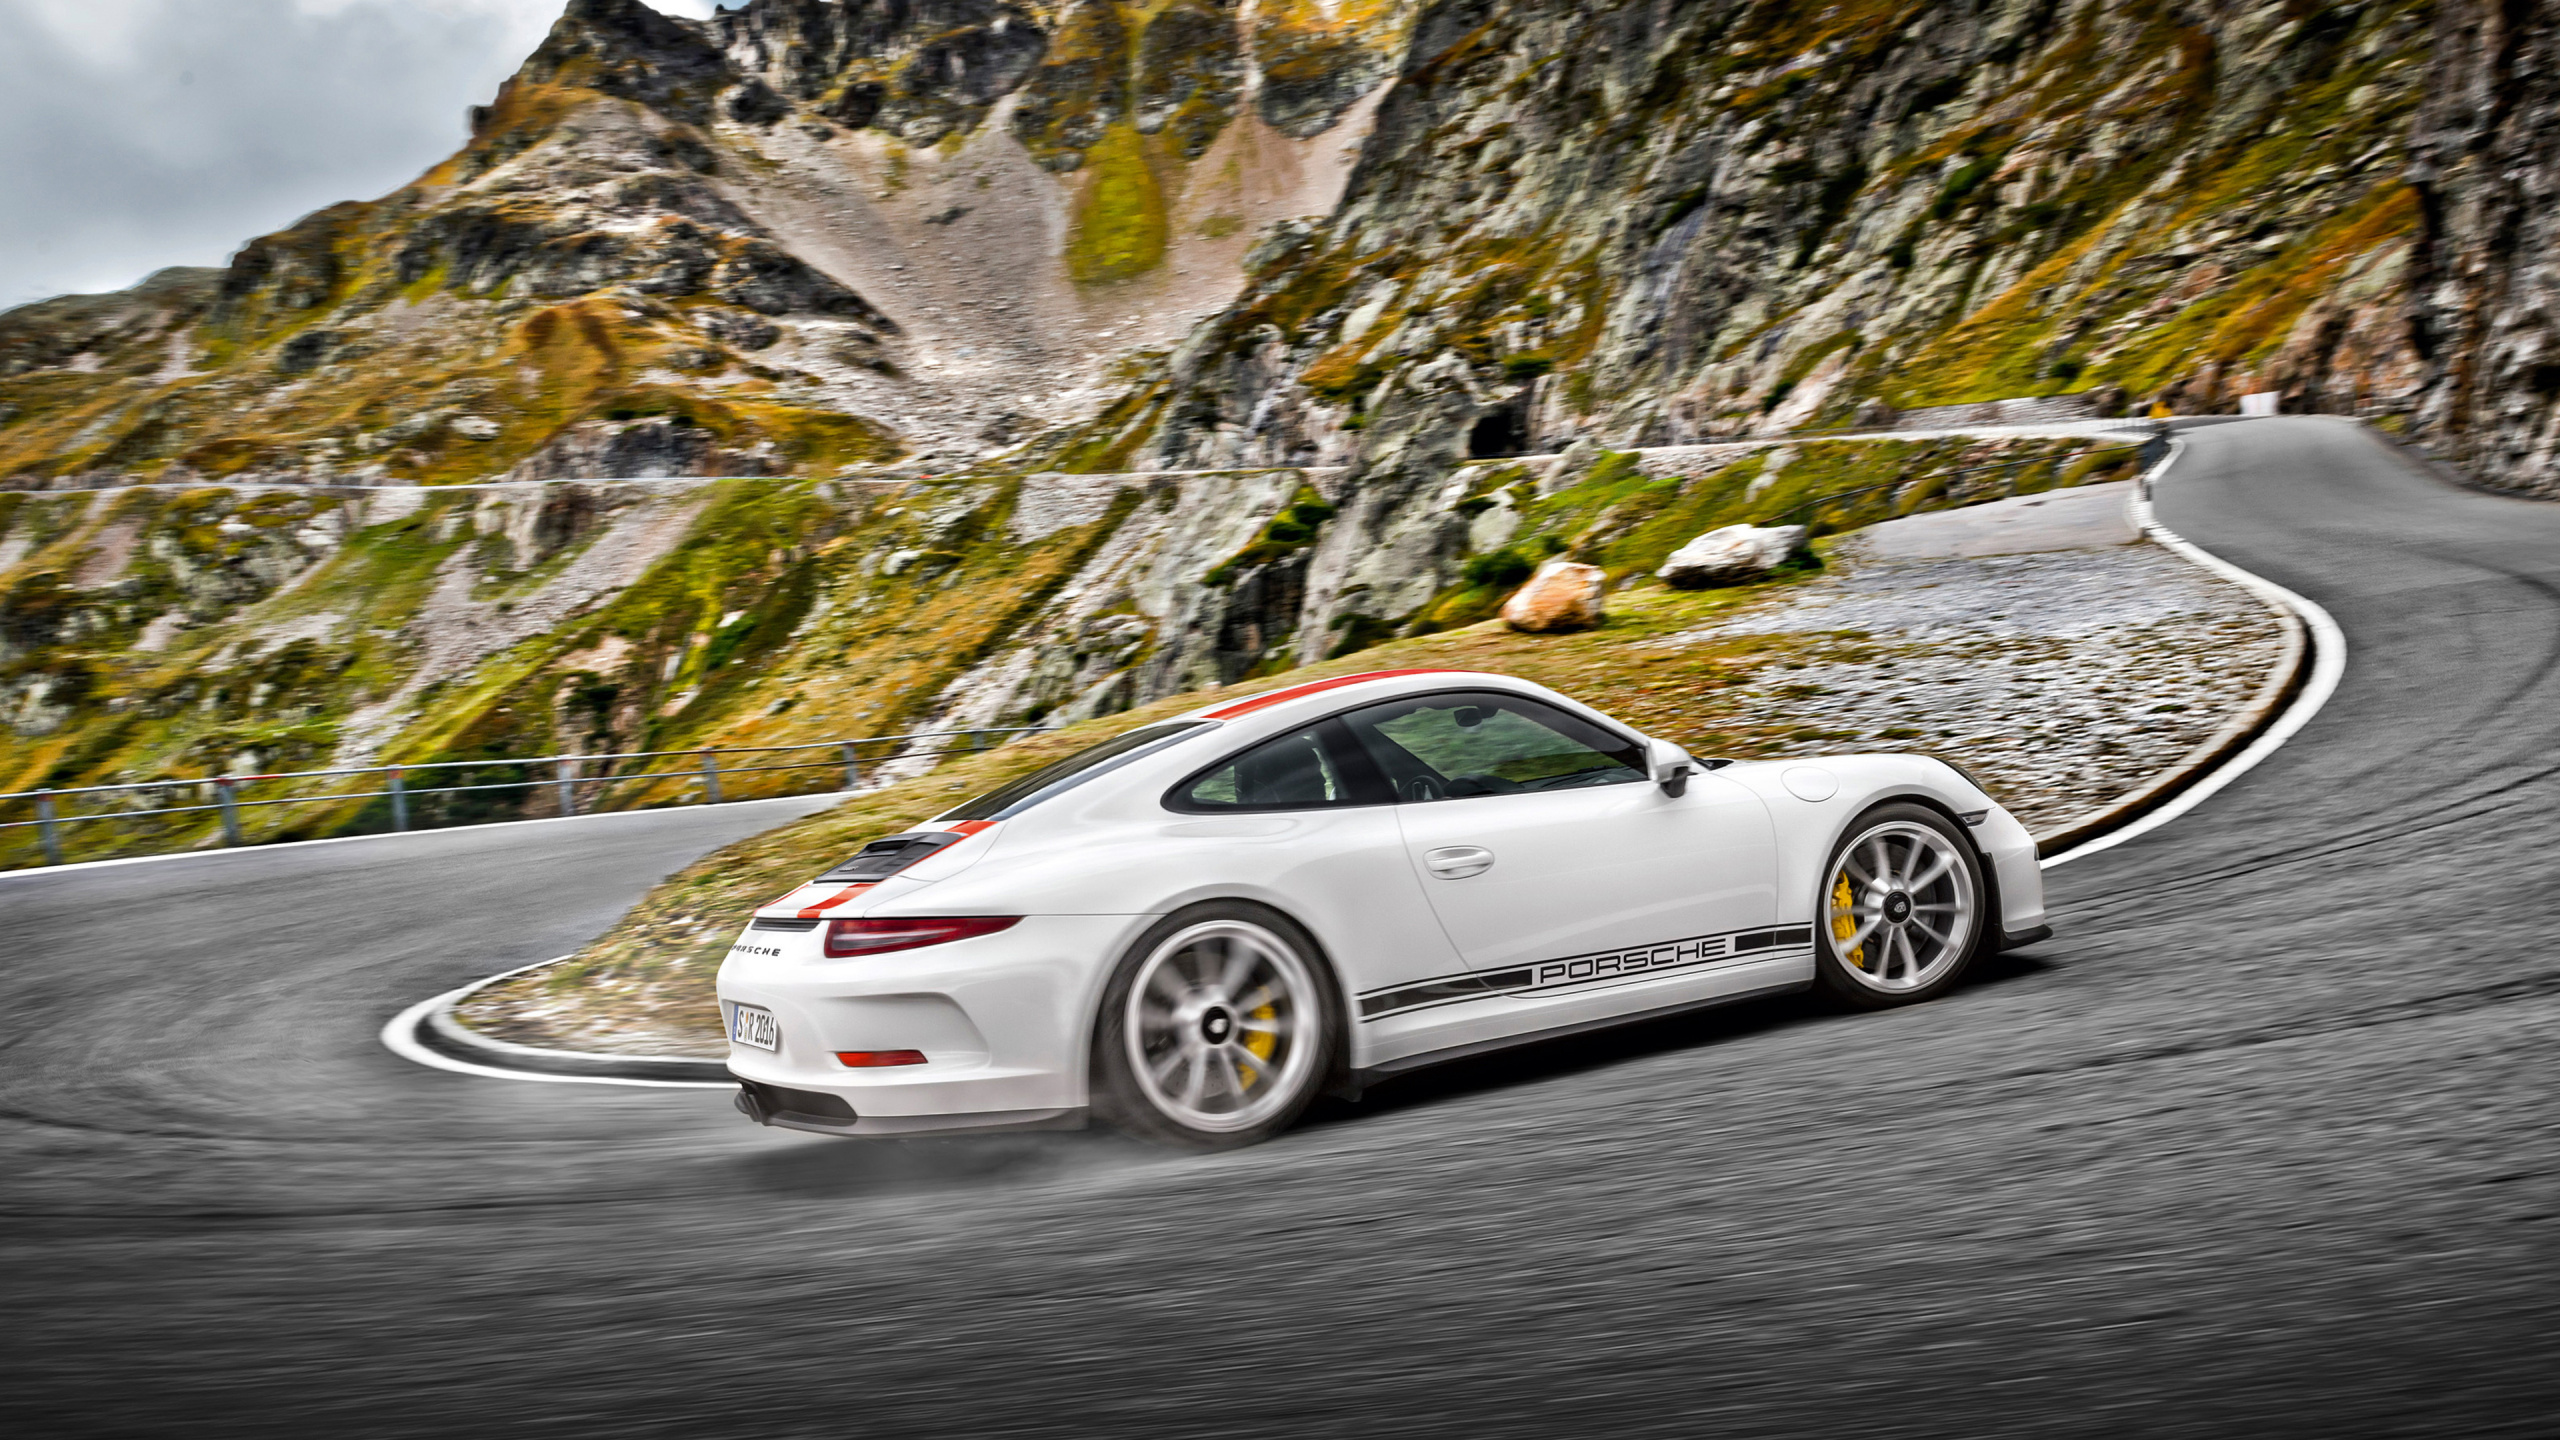 Weißer Porsche 911 Unterwegs. Wallpaper in 2560x1440 Resolution